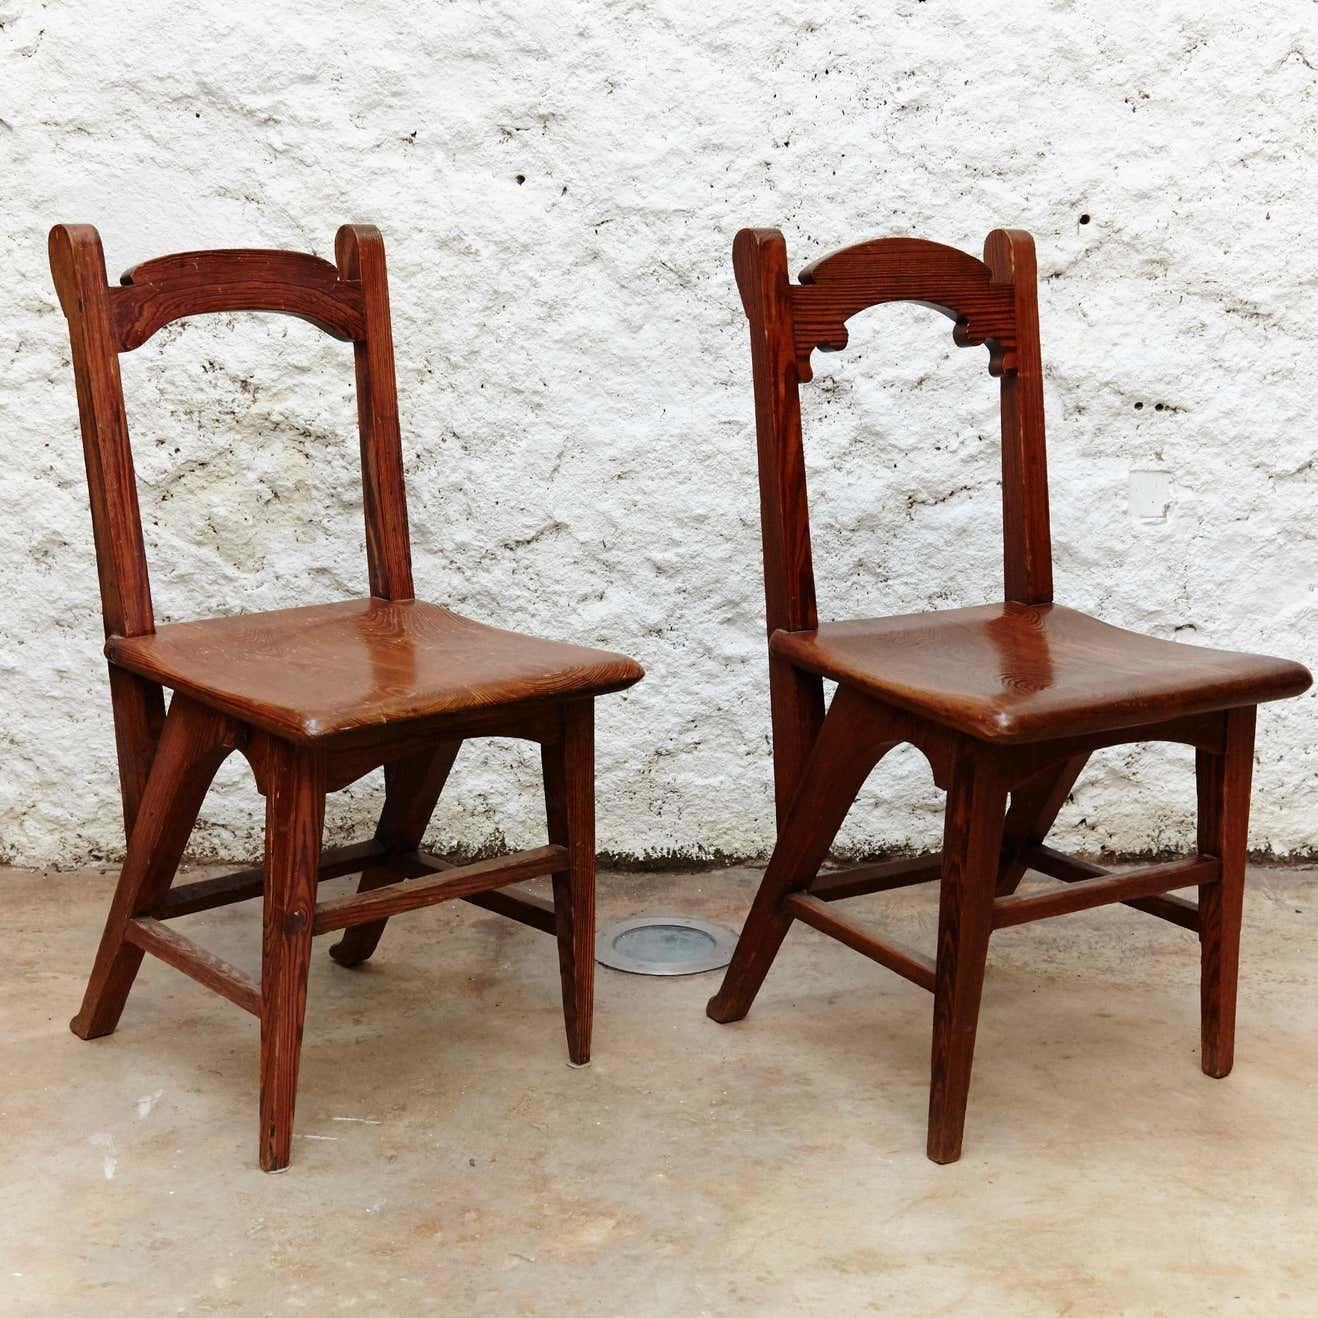 Paire de chaises en bois modernistes Catalanes,
Conçu pour le Palais de justice de Barcelone.
Fabriqué vers 1920 à Barcelone (Espagne).

En état d'origine avec une usure mineure conforme à l'âge et à l'utilisation, préservant une belle